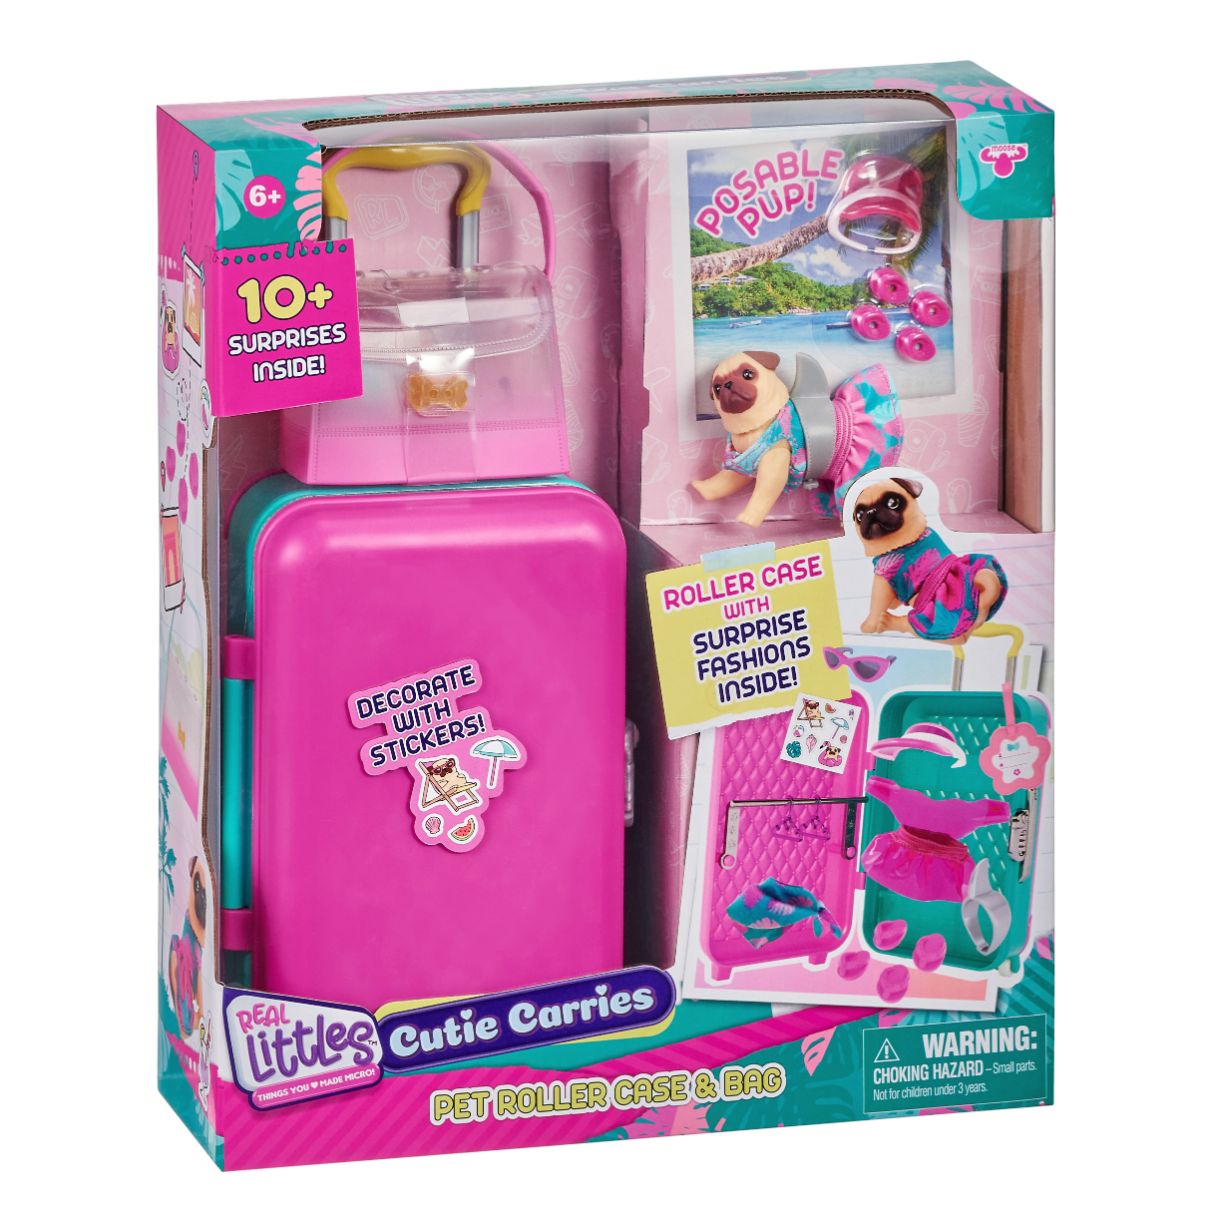 Acheter Real Littles Cutie Carries Kit de Voyage Cefa Toys 236 -  Juguetilandia